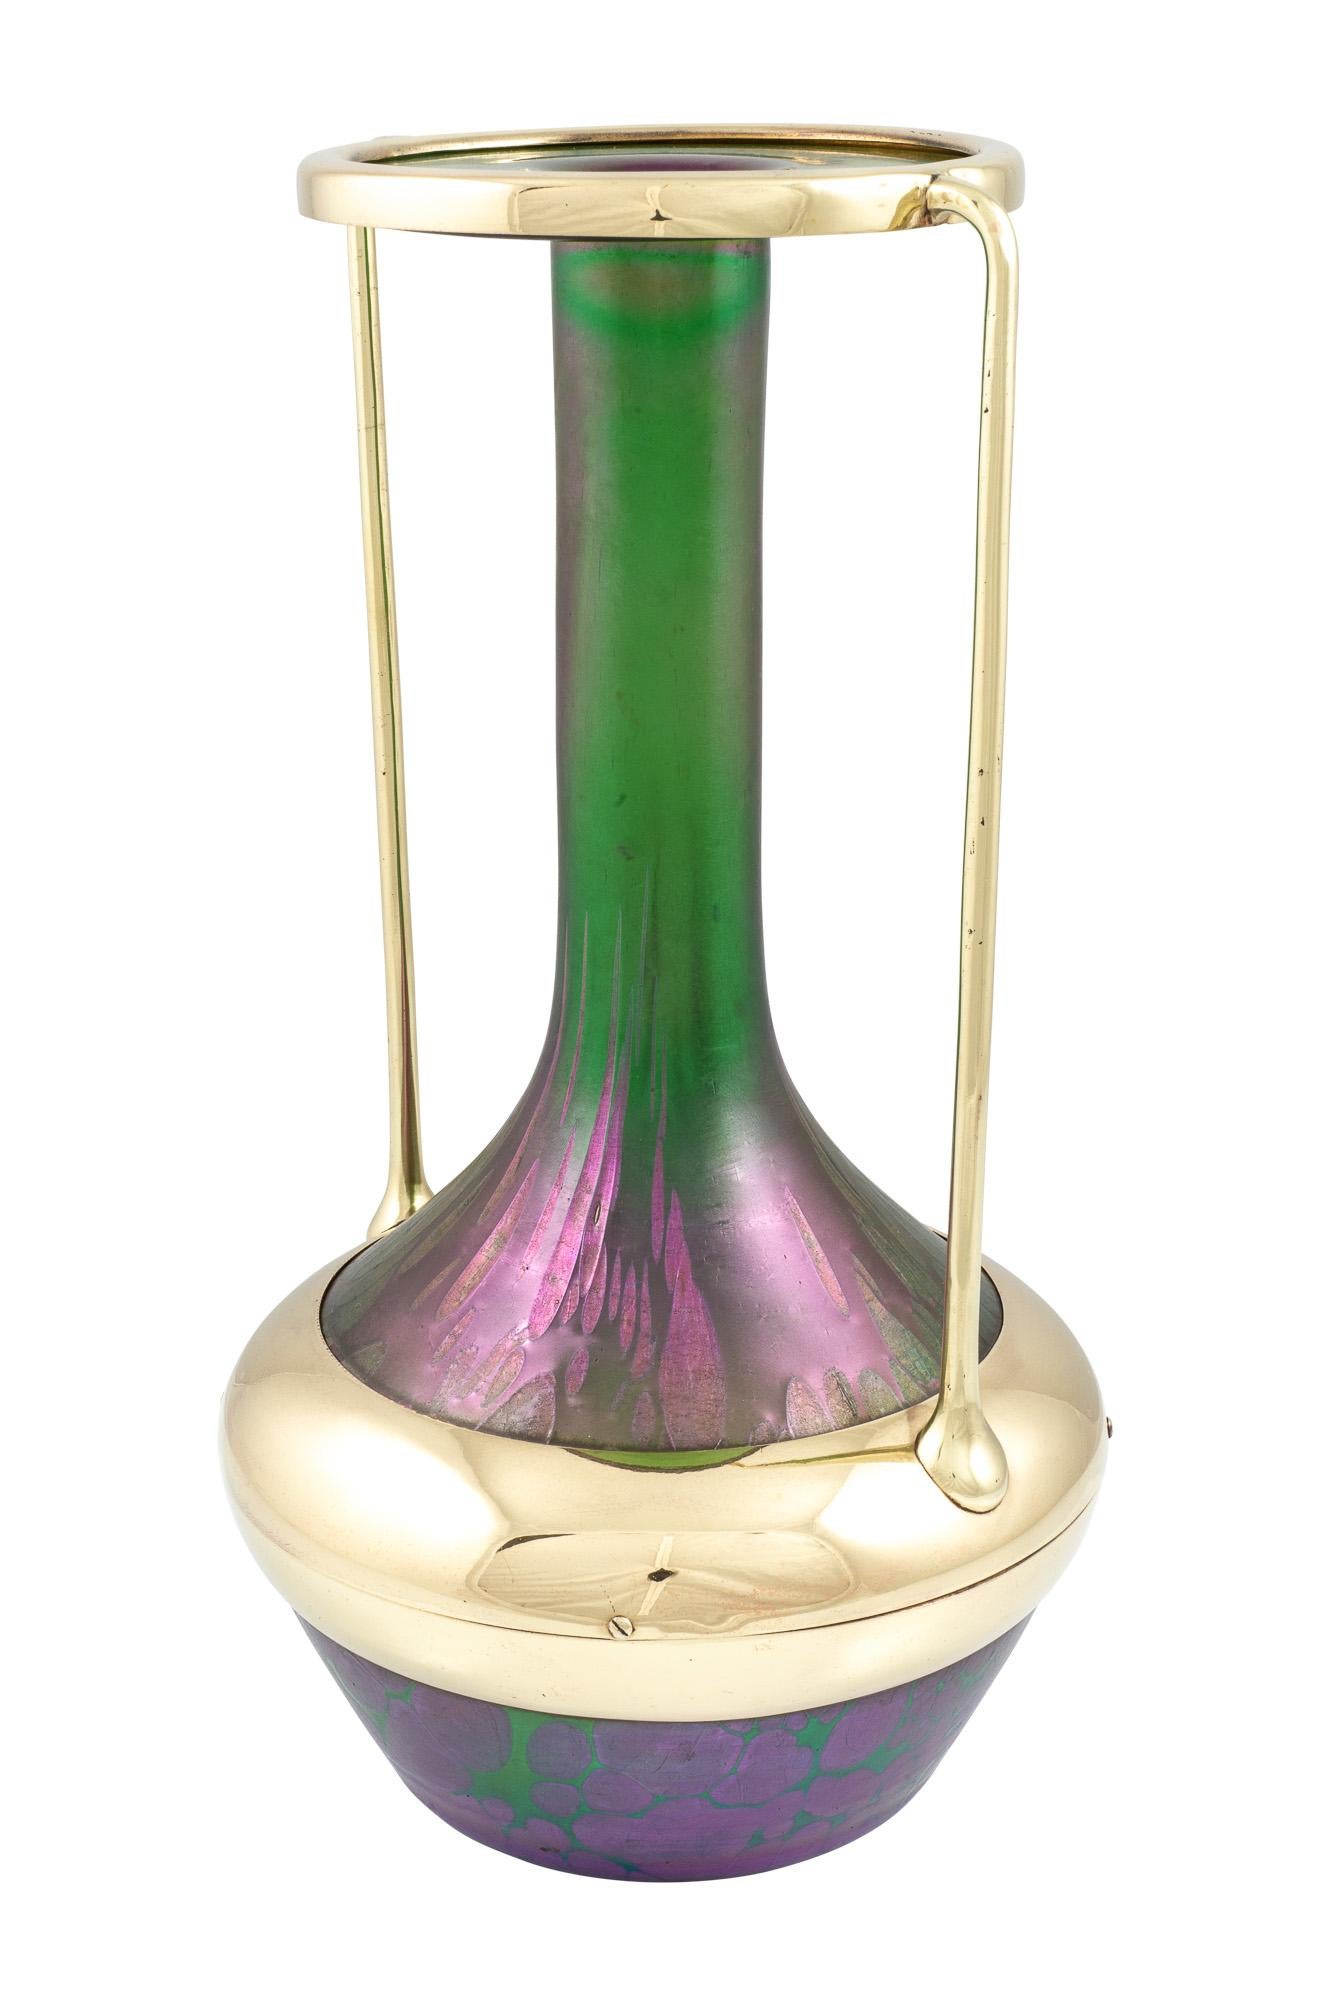 Polished Alfred Roller Glass Vase Brass Mounting Loetz Austrian Jugendstil, circa 1901